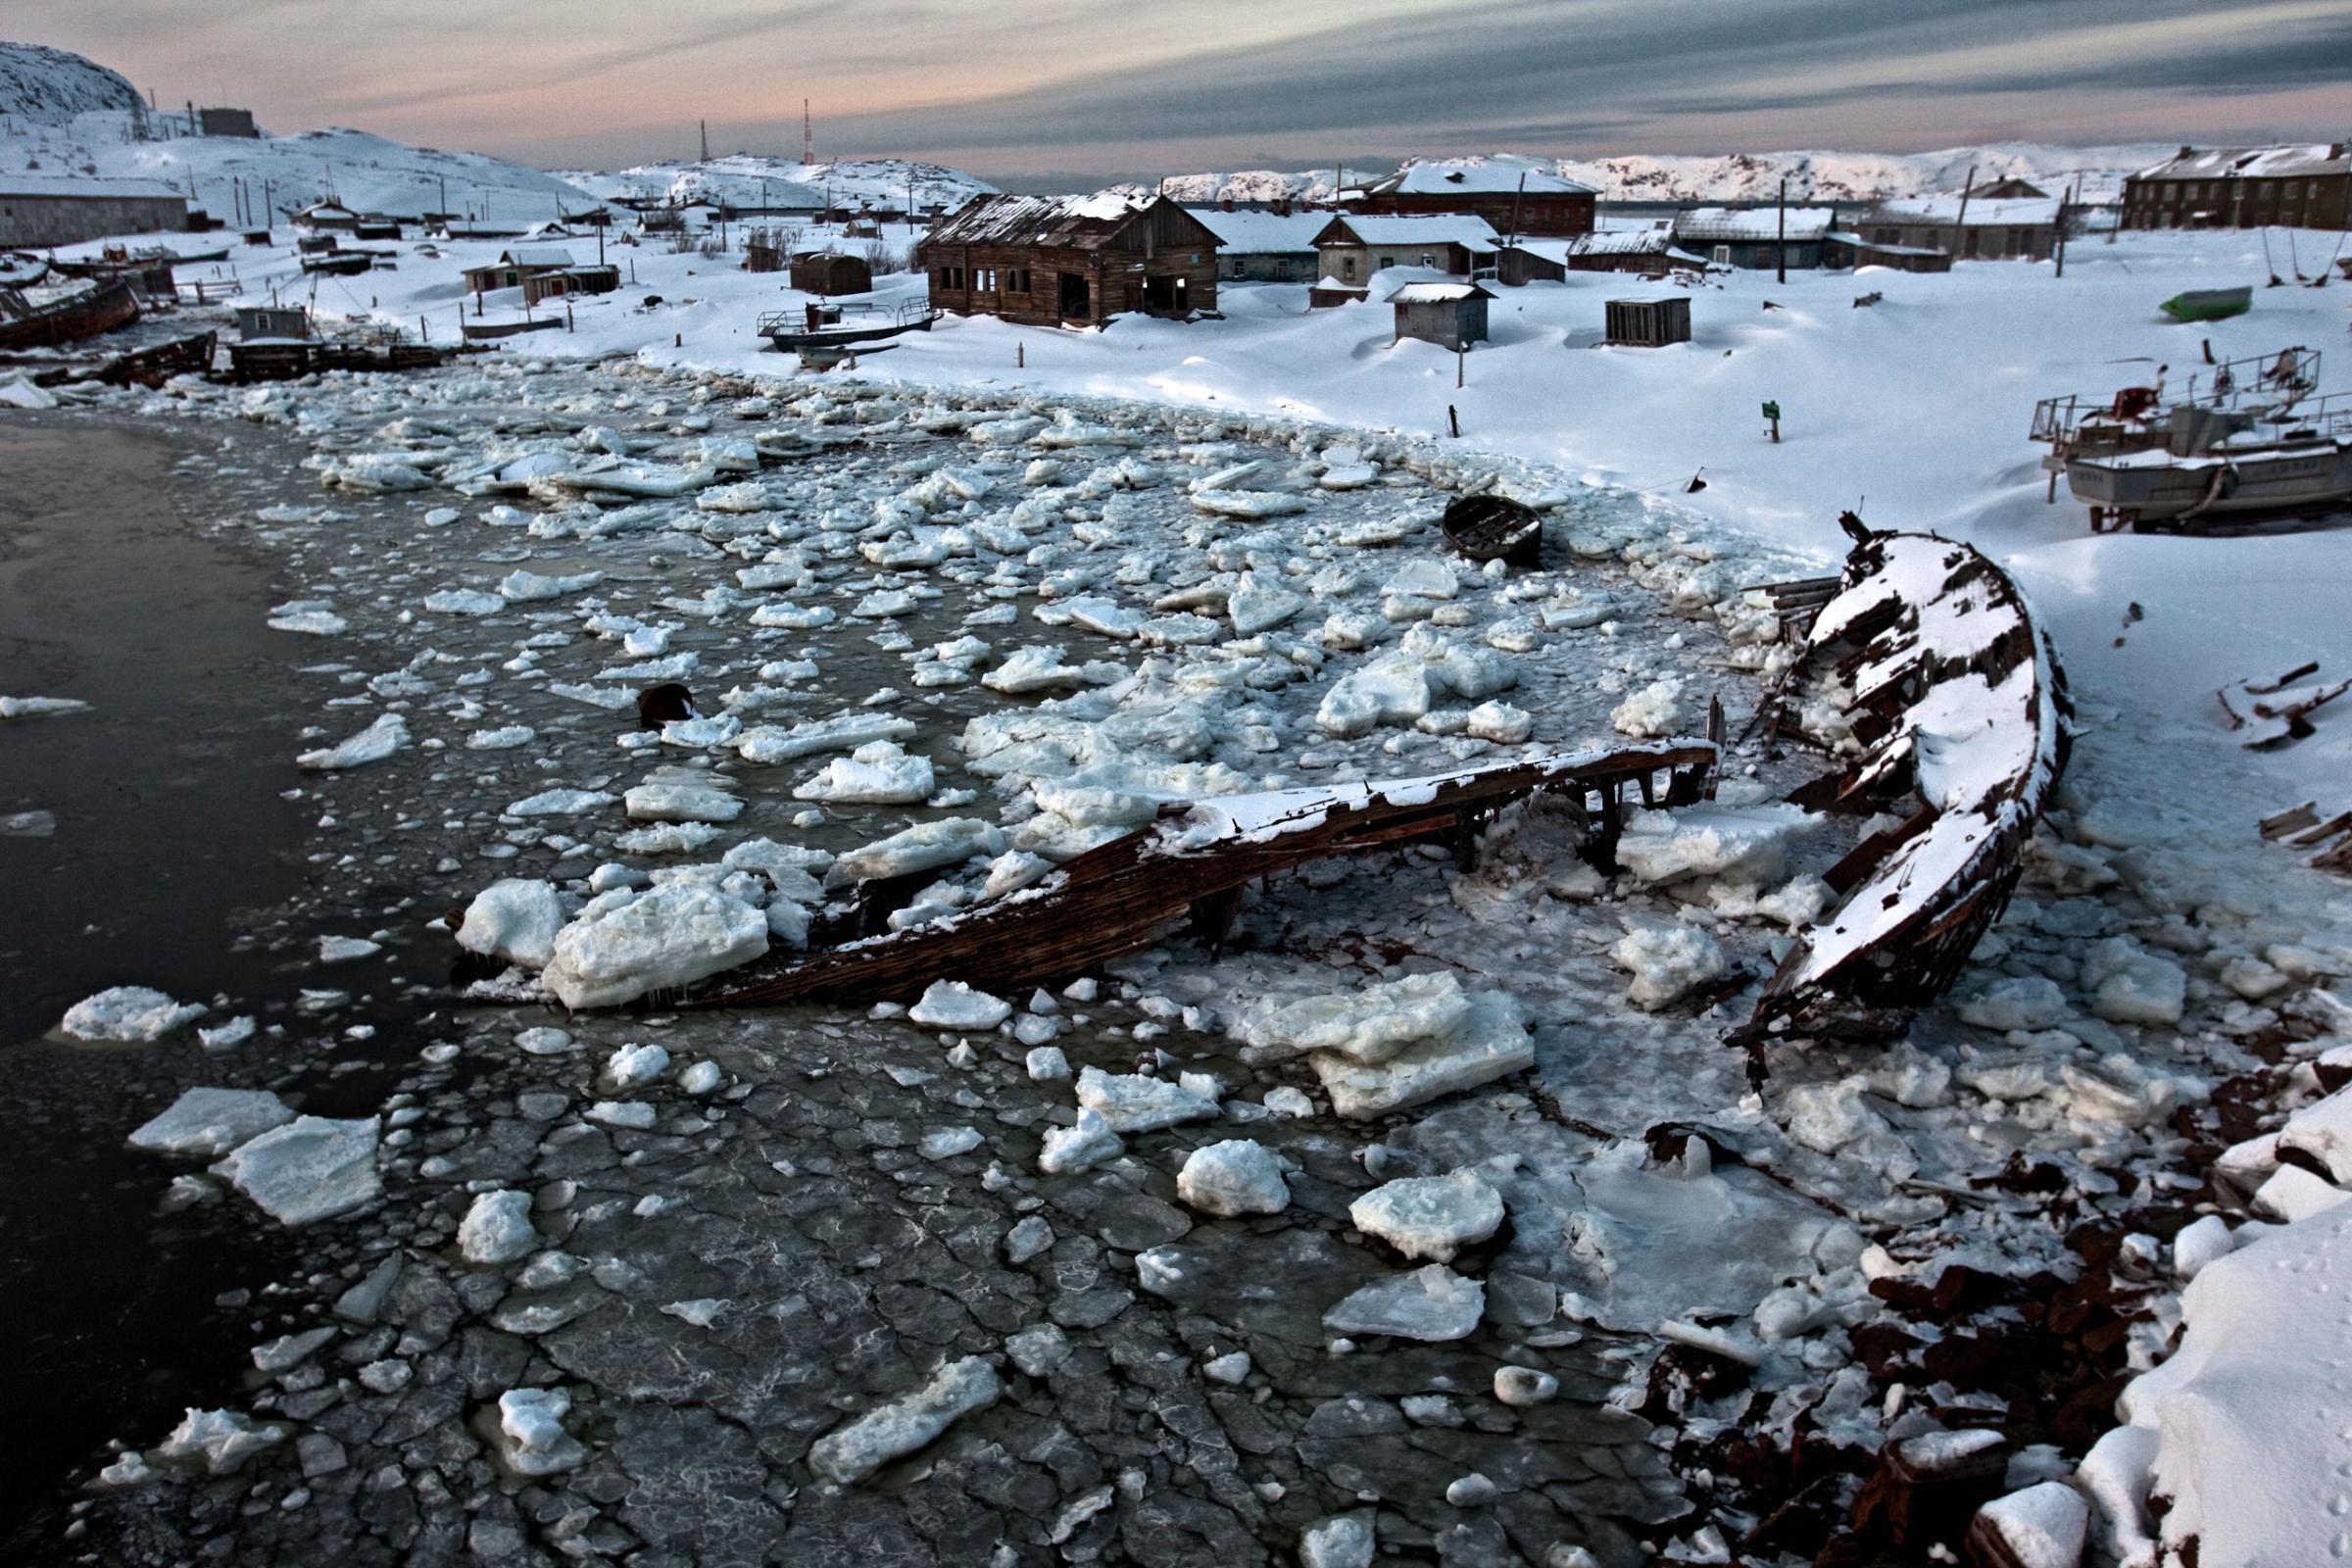 World’s largest gas field found near derelict Arctic Russian village